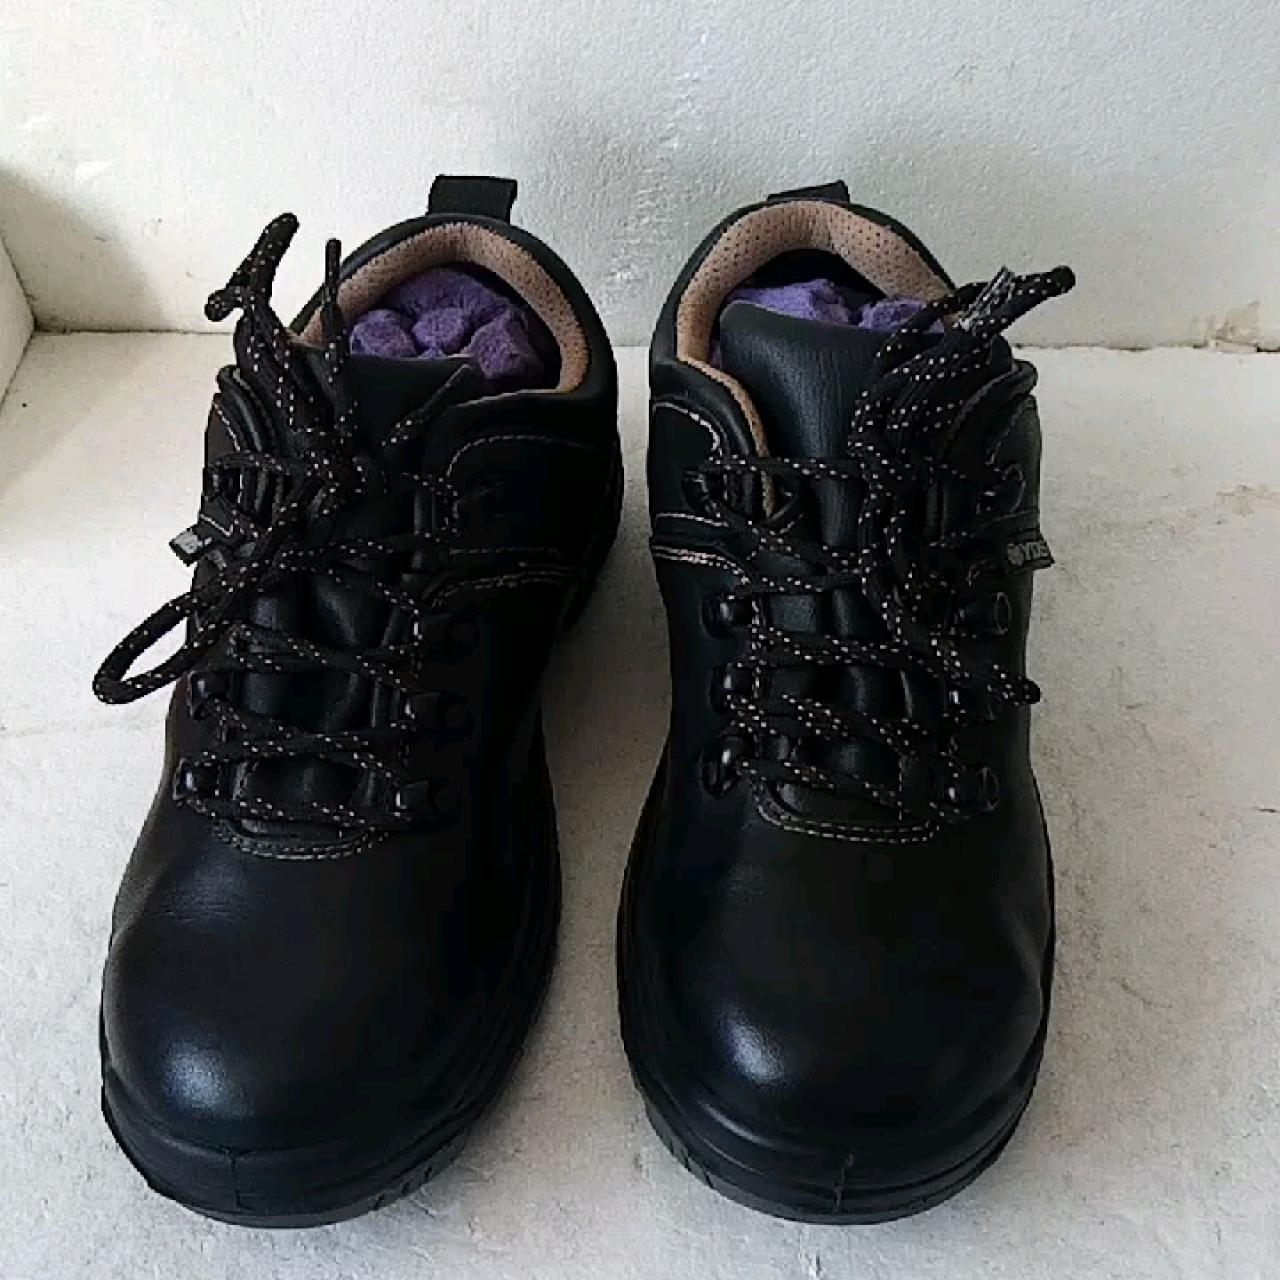 Yd. Women's Black Boots | Depop